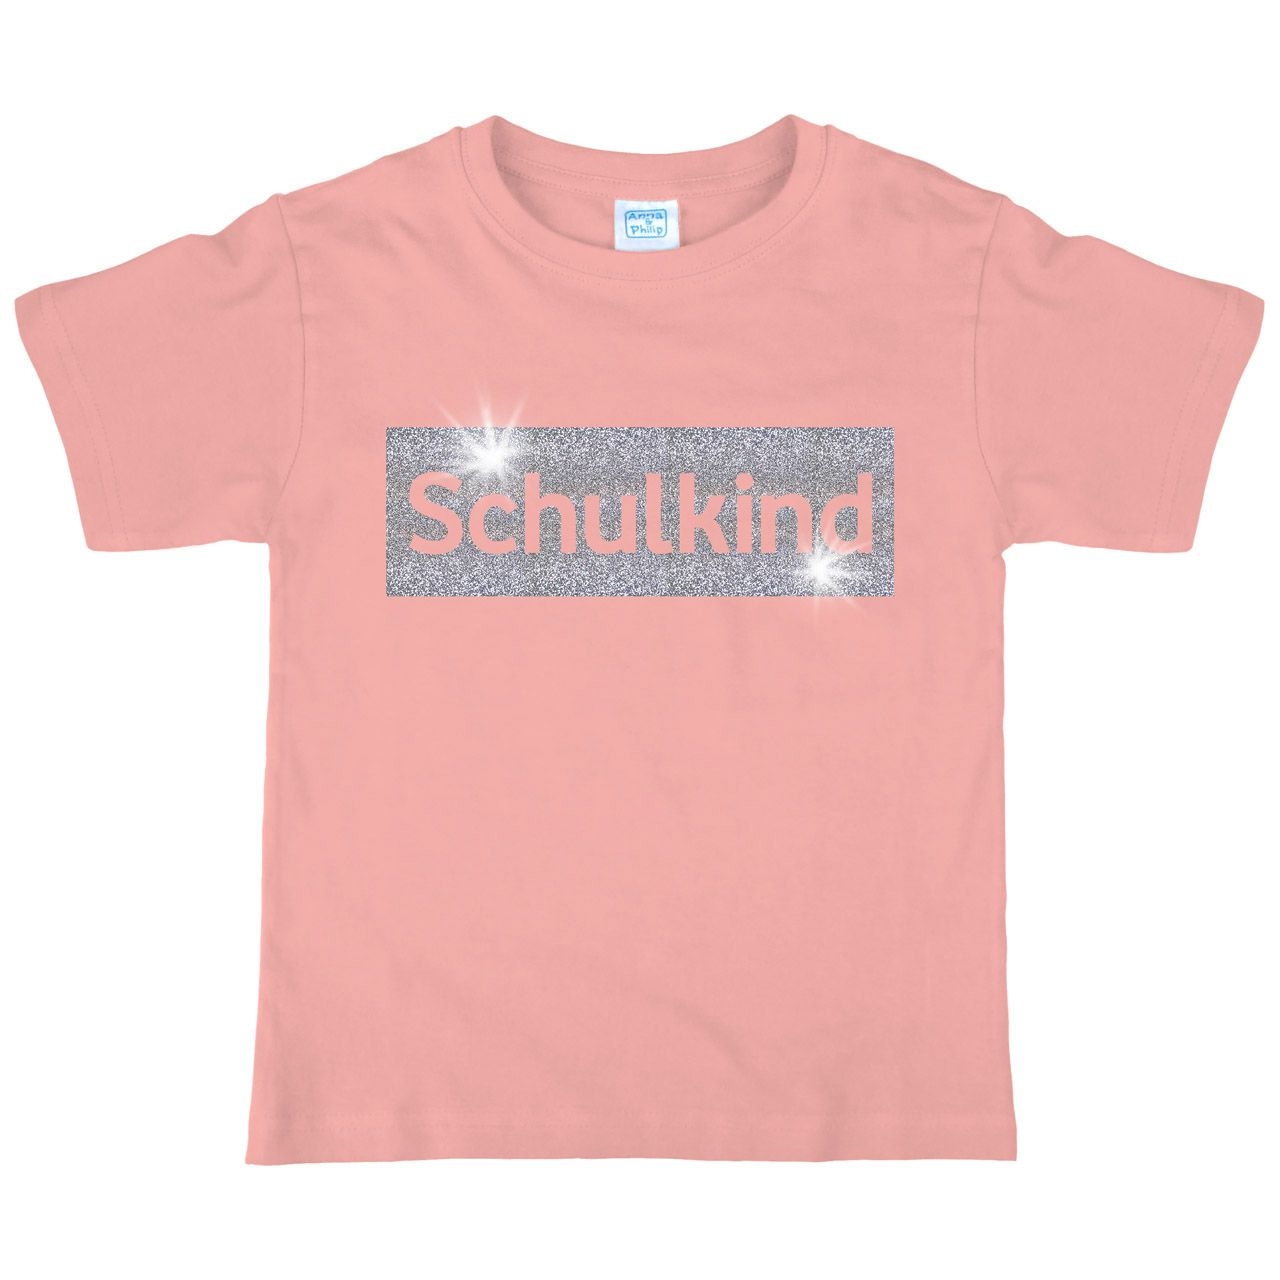 Schulkind Glitzer Kinder T-Shirt rosa 122 / 128